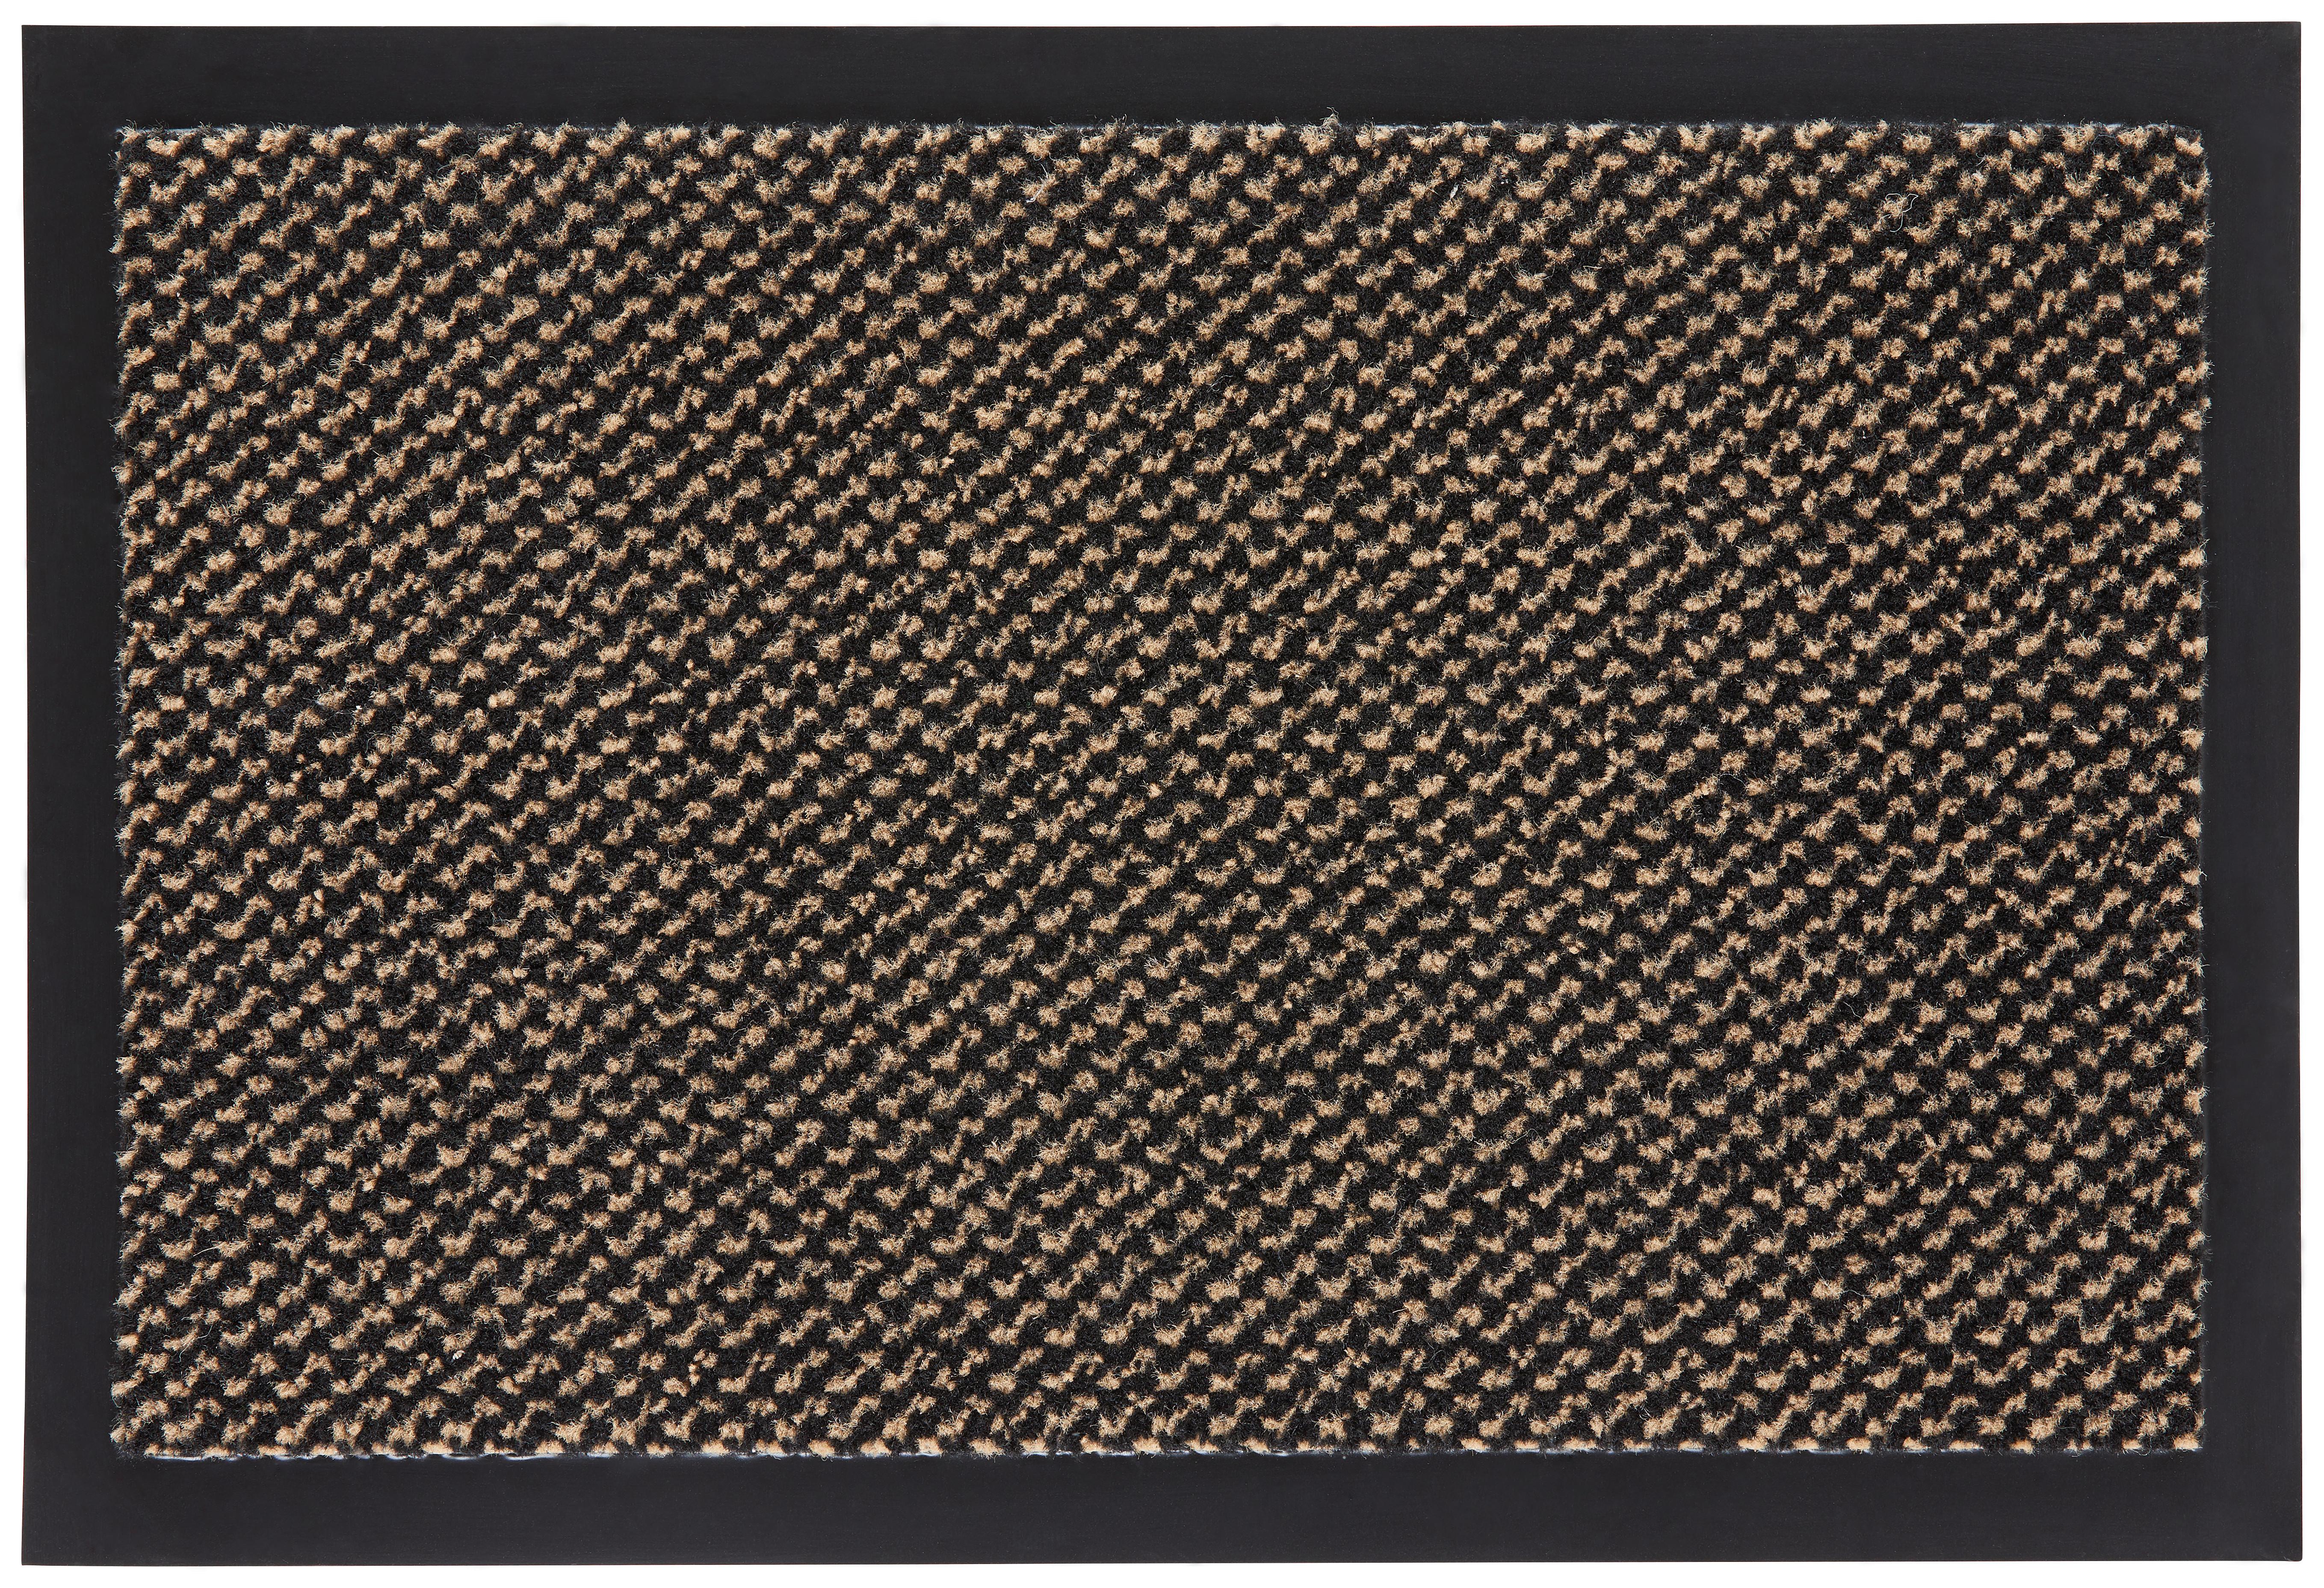 Fußmatte Hamptons ca. 40x60cm - Beige/Schwarz, KONVENTIONELL, Textil (40/60cm) - Modern Living